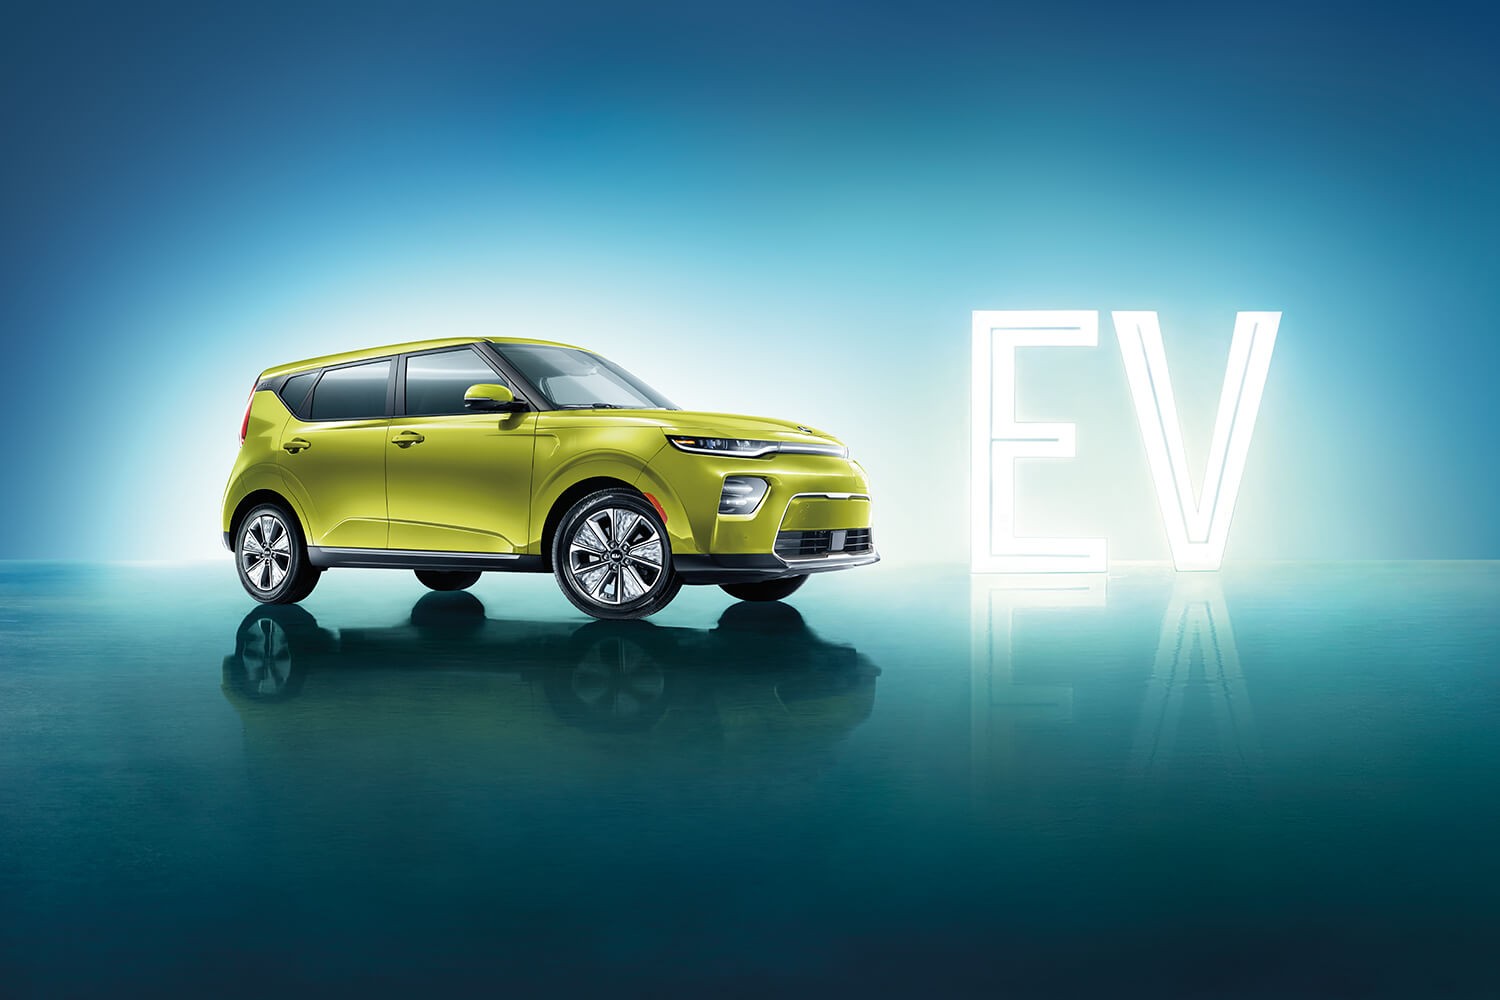 Essai routier : Le Kia Soul EV 2020